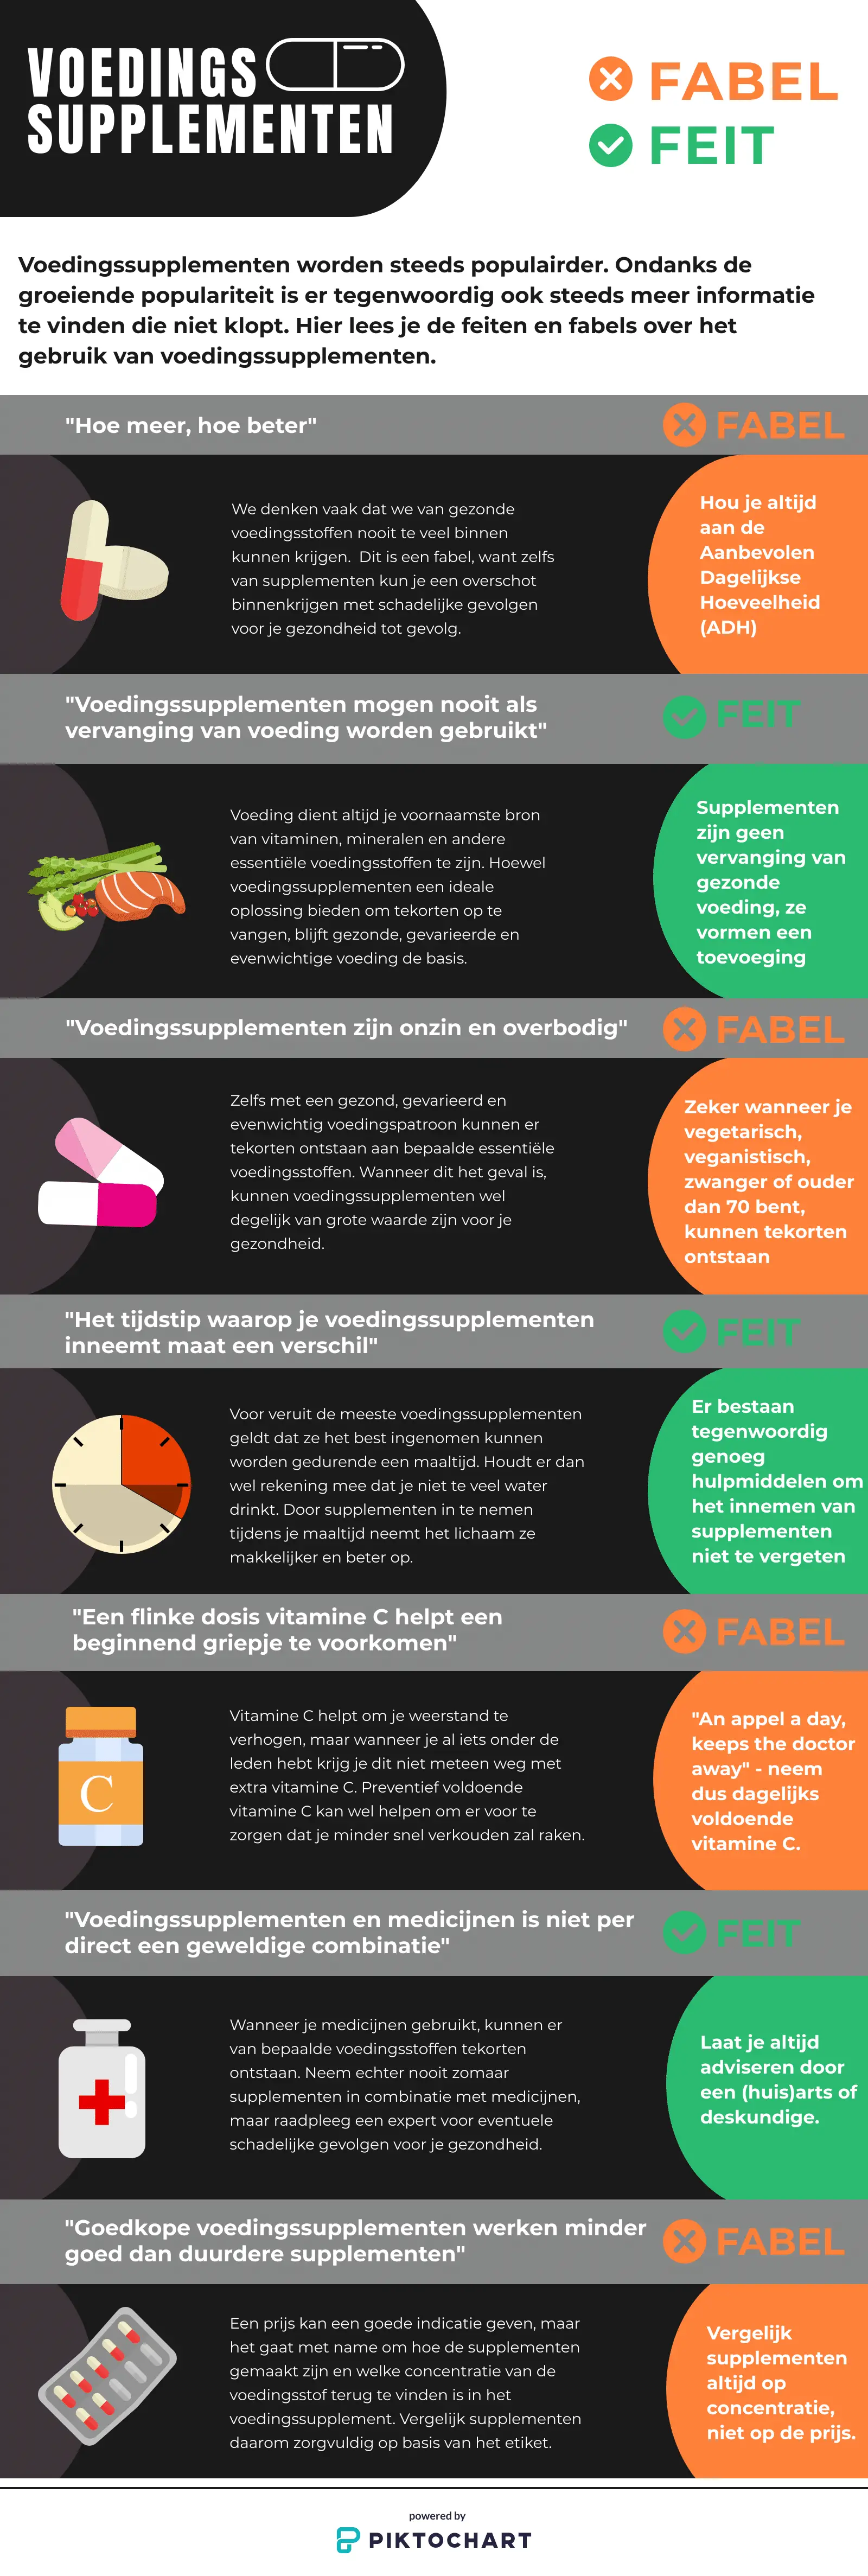 Een infographic over de feiten en fabels van voedingssupplementen. Voor eens en altijd een einde gemaakt aan wat nou wel of niet waar is.